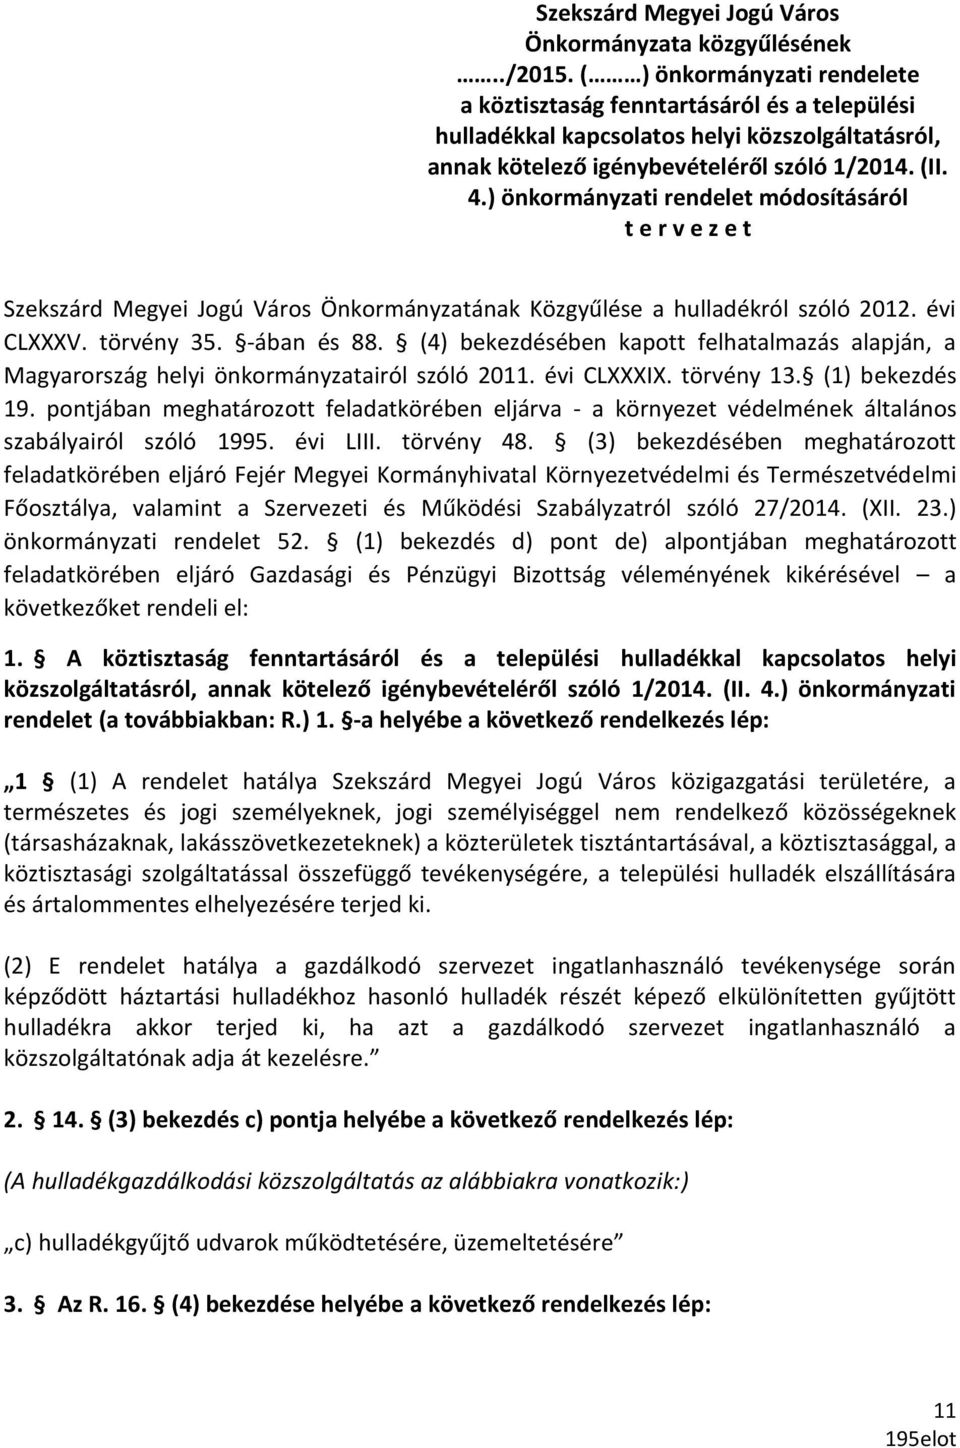 ) önkormányzati rendelet módosításáról t e r v e z e t Szekszárd Megyei Jogú Város Önkormányzatának Közgyűlése a hulladékról szóló 2012. évi CLXXXV. törvény 35. -ában és 88.